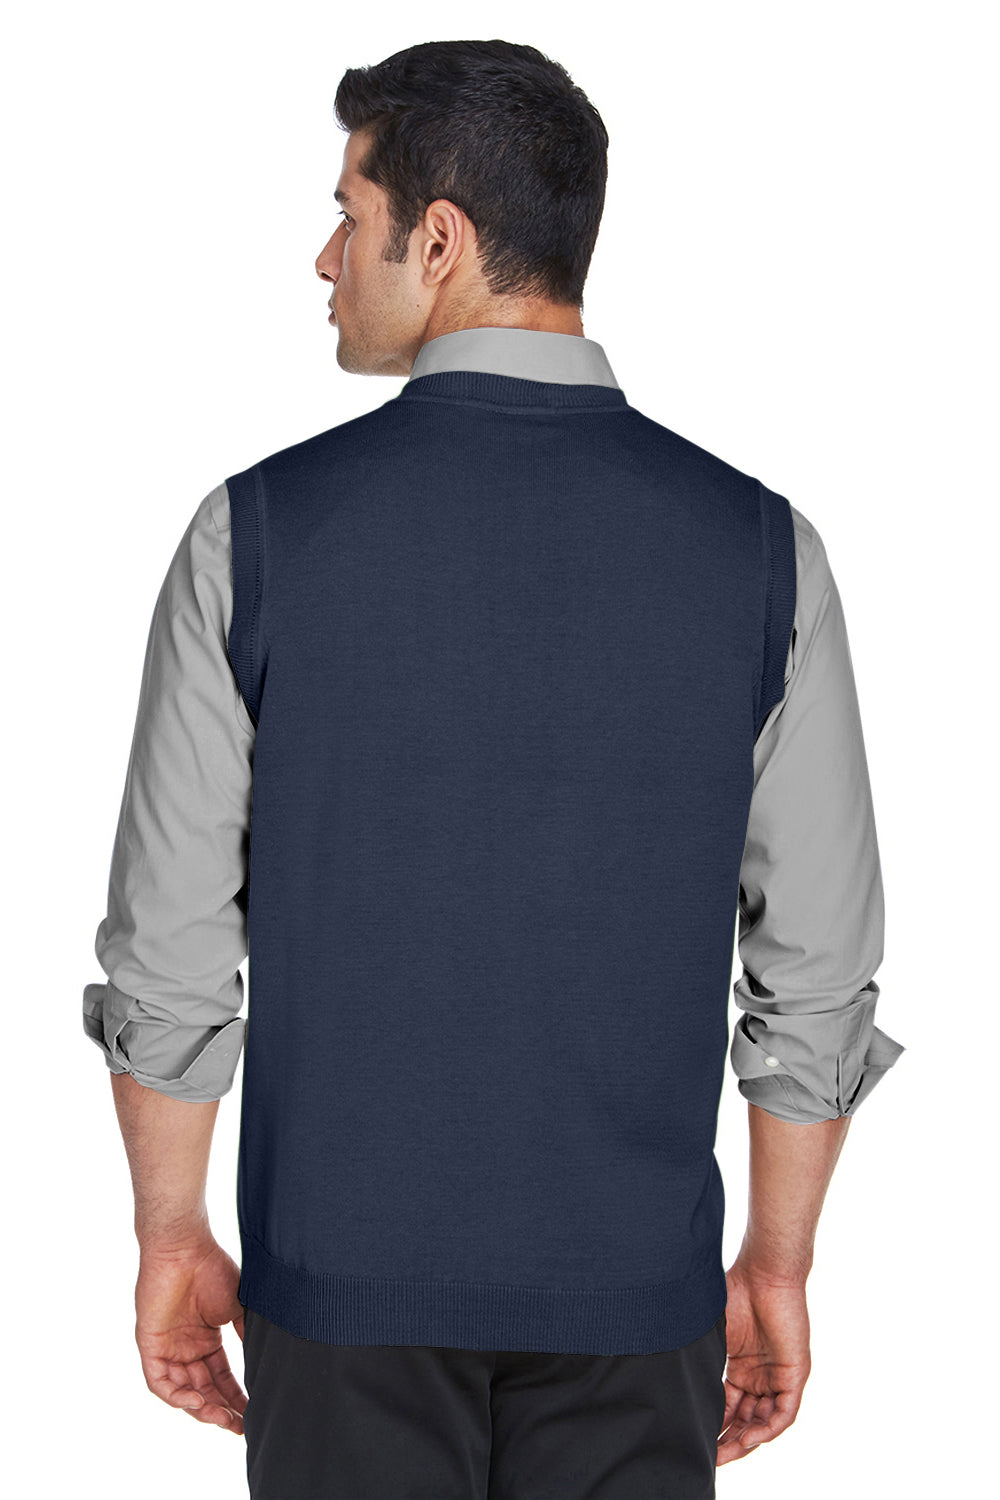 Devon & Jones D477 Mens Wrinkle Resistant V-Neck Sweater Vest Navy Blue Back